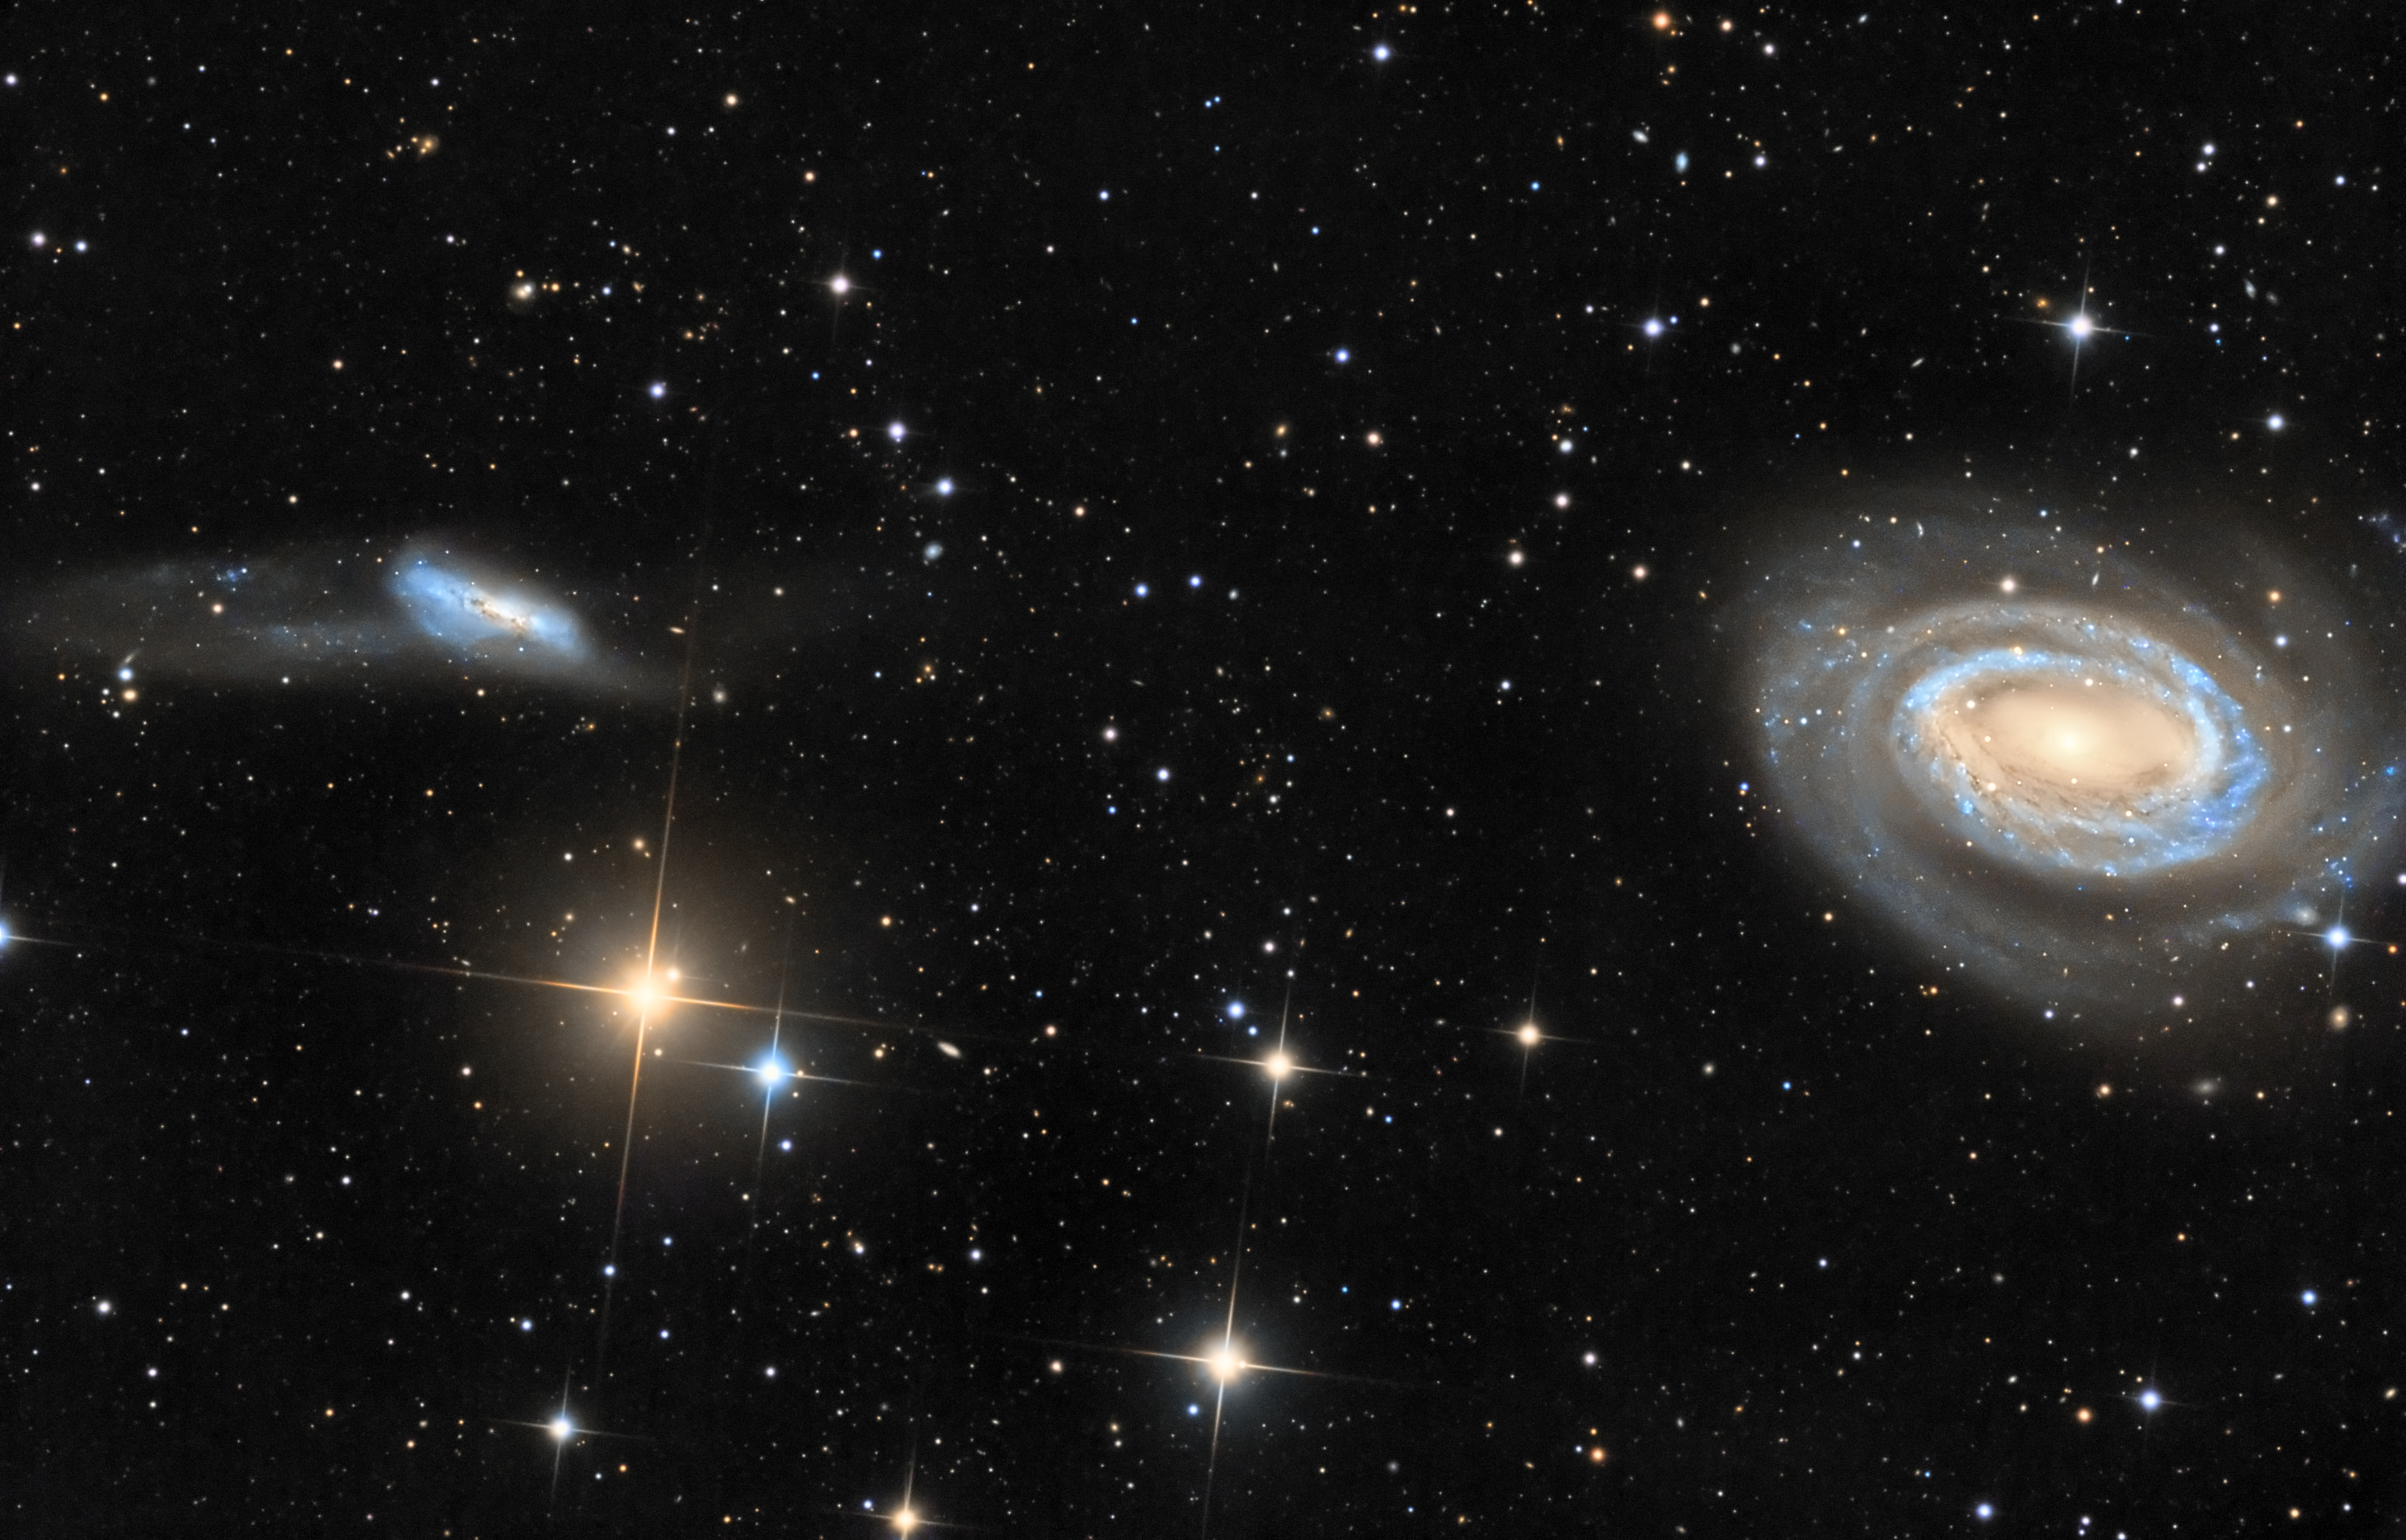 Arp 159 et NGC 4725